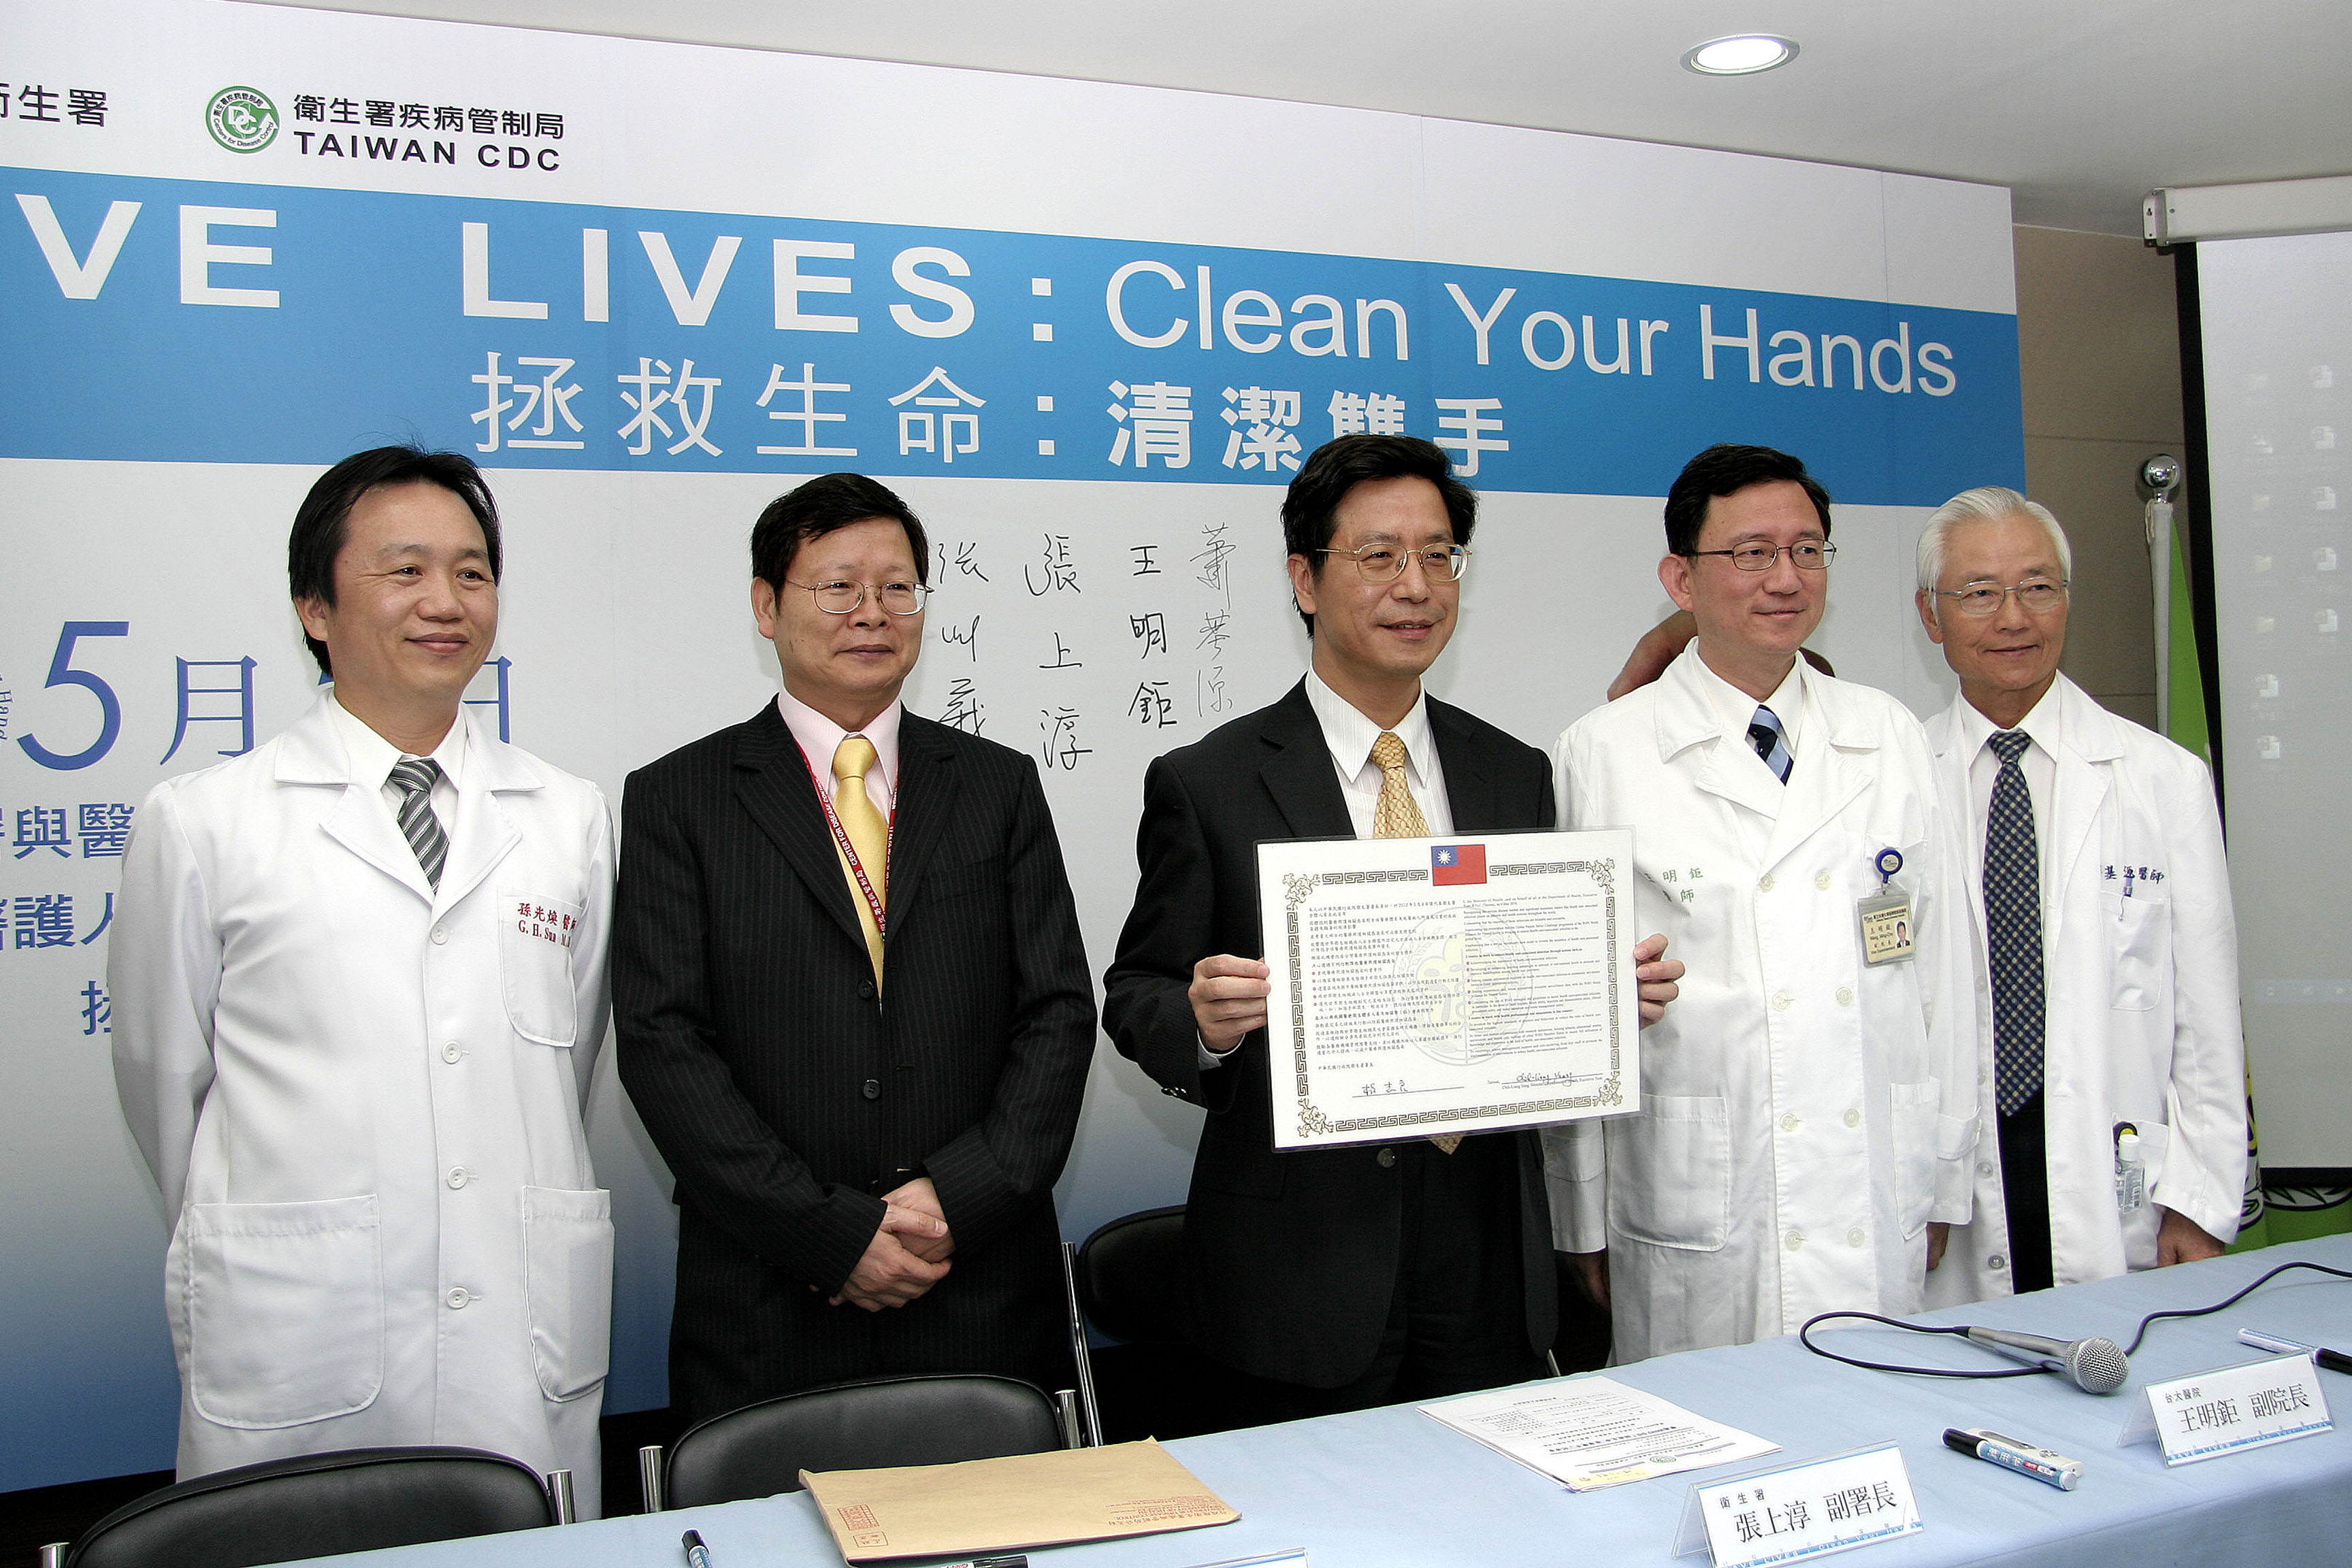 響應WHO「拯救生命 清潔雙手」醫護人員手部衛生活動：衛生署承諾致力控制醫療照護相關感染